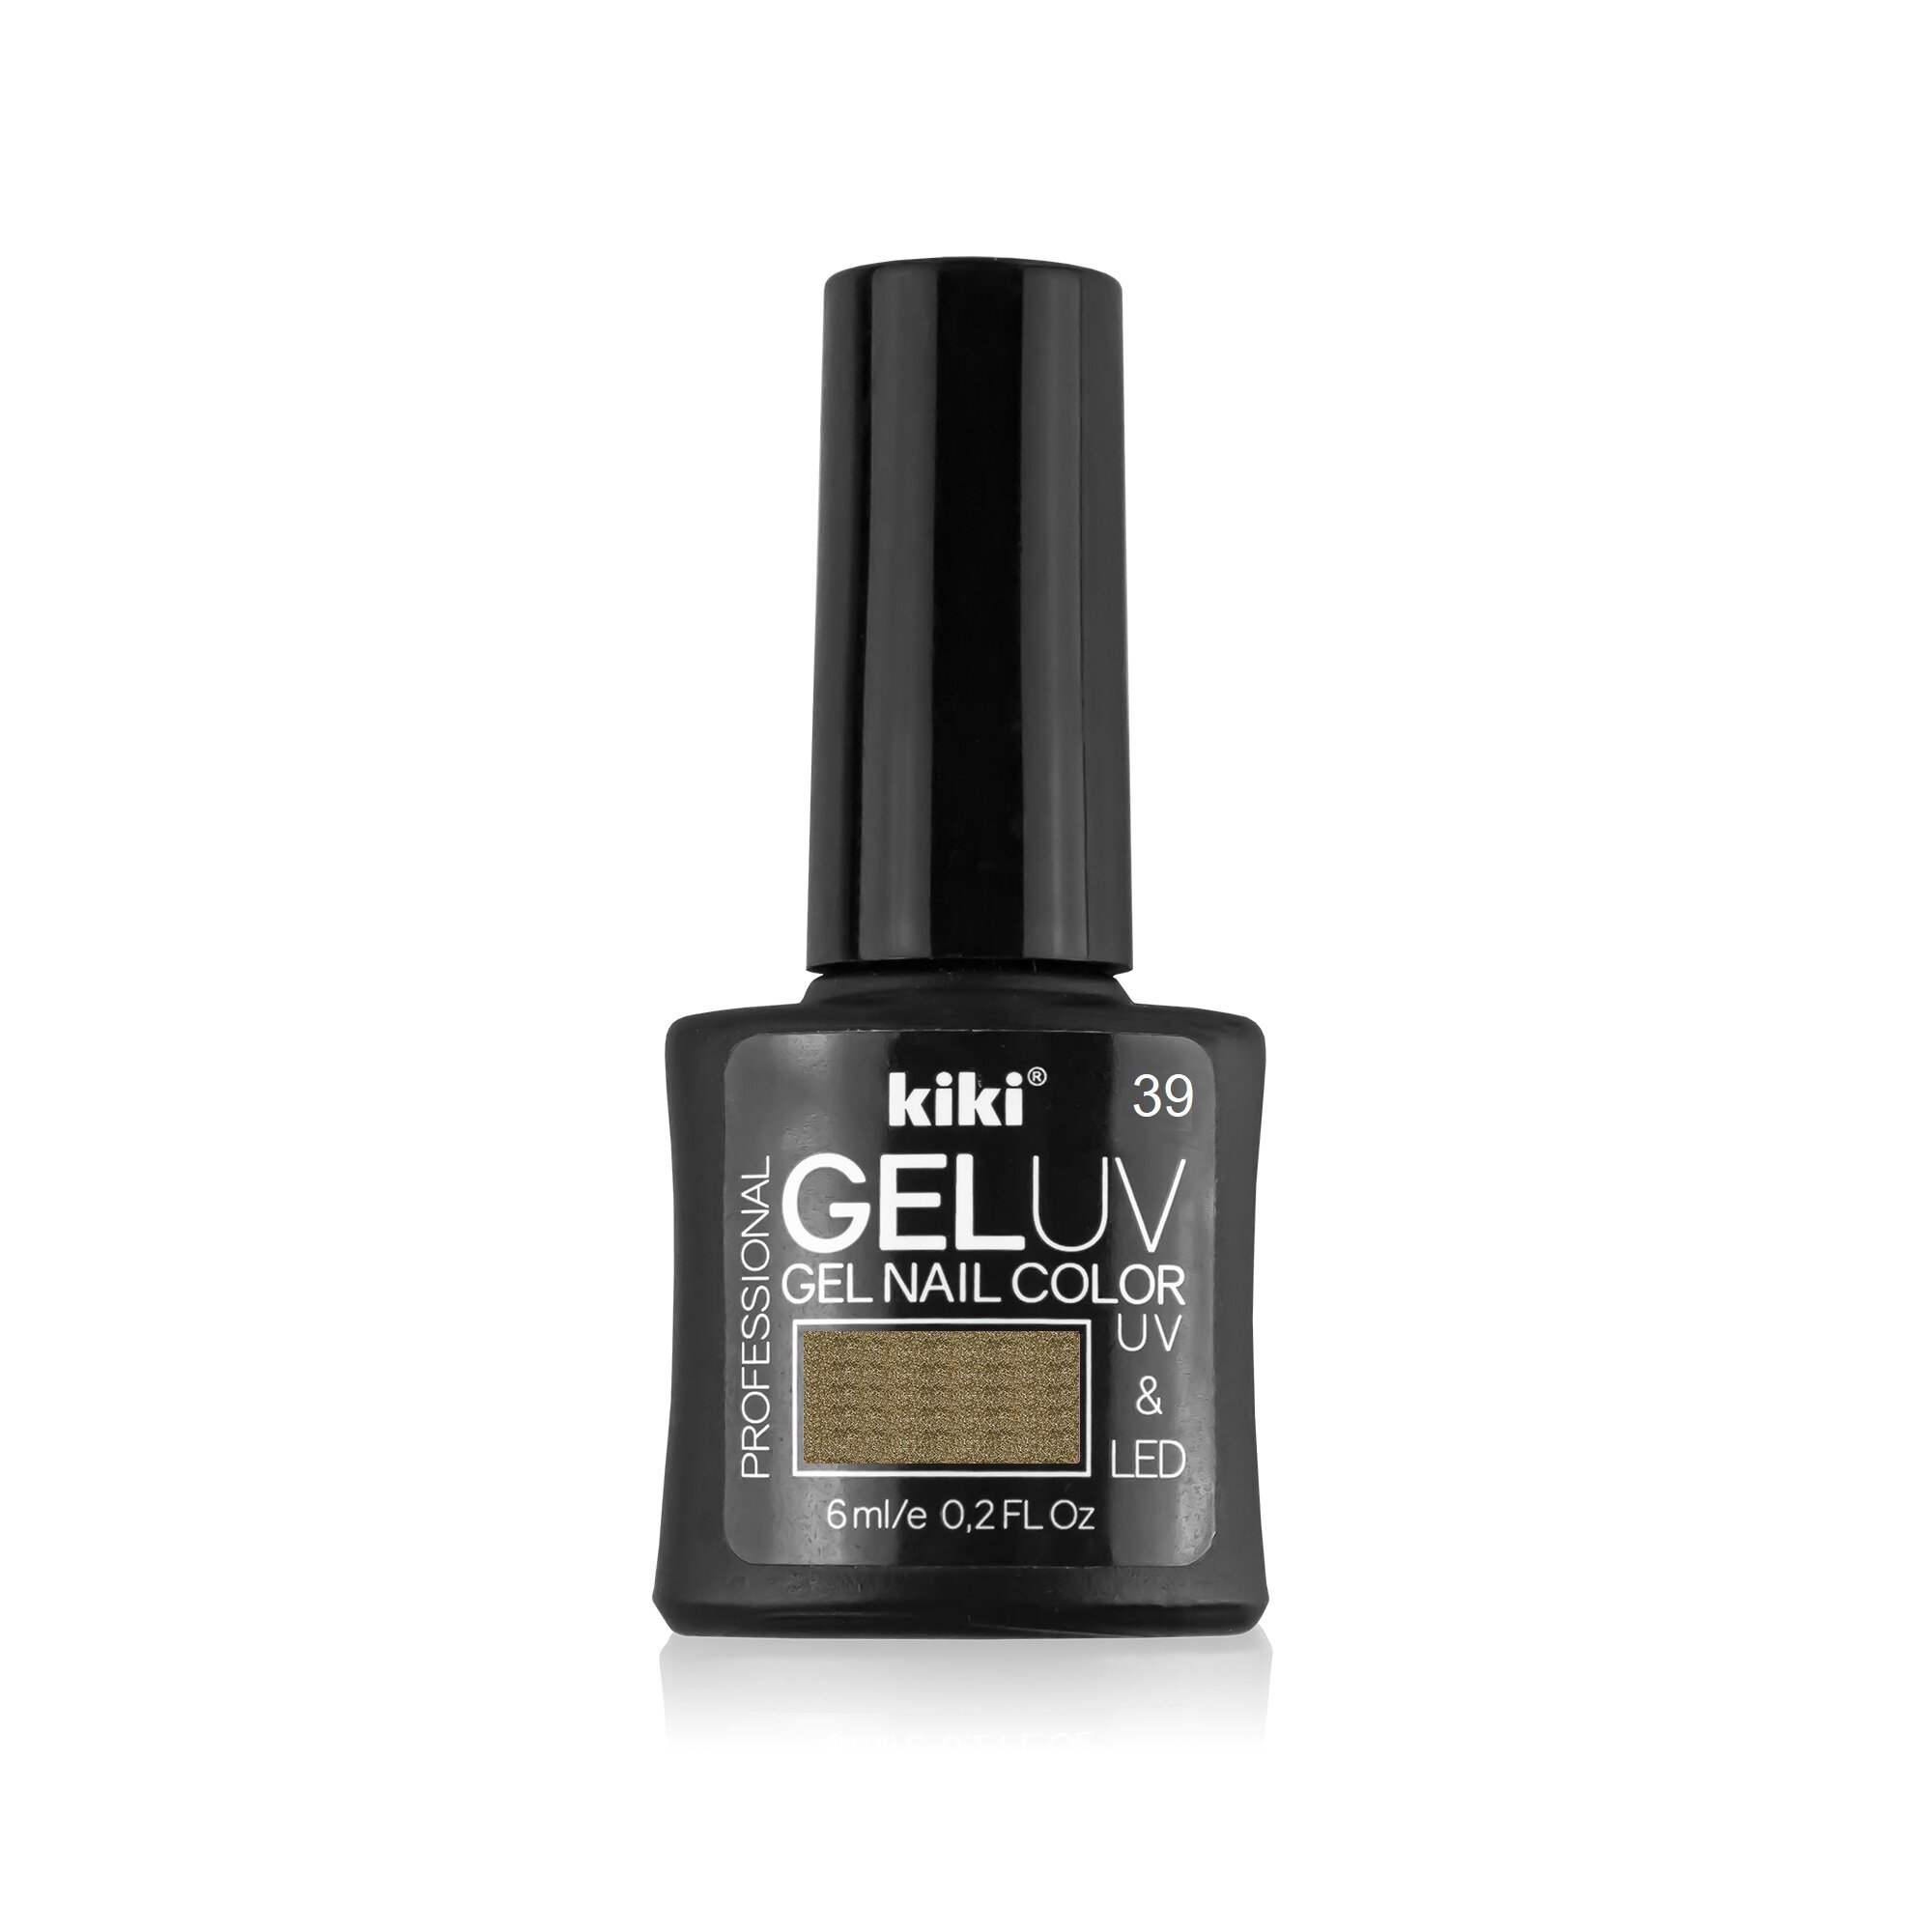 Гель-лак для ногтей KIKI оттенок 39 GEL UV&LED, насыщенный золотой, 6 мл